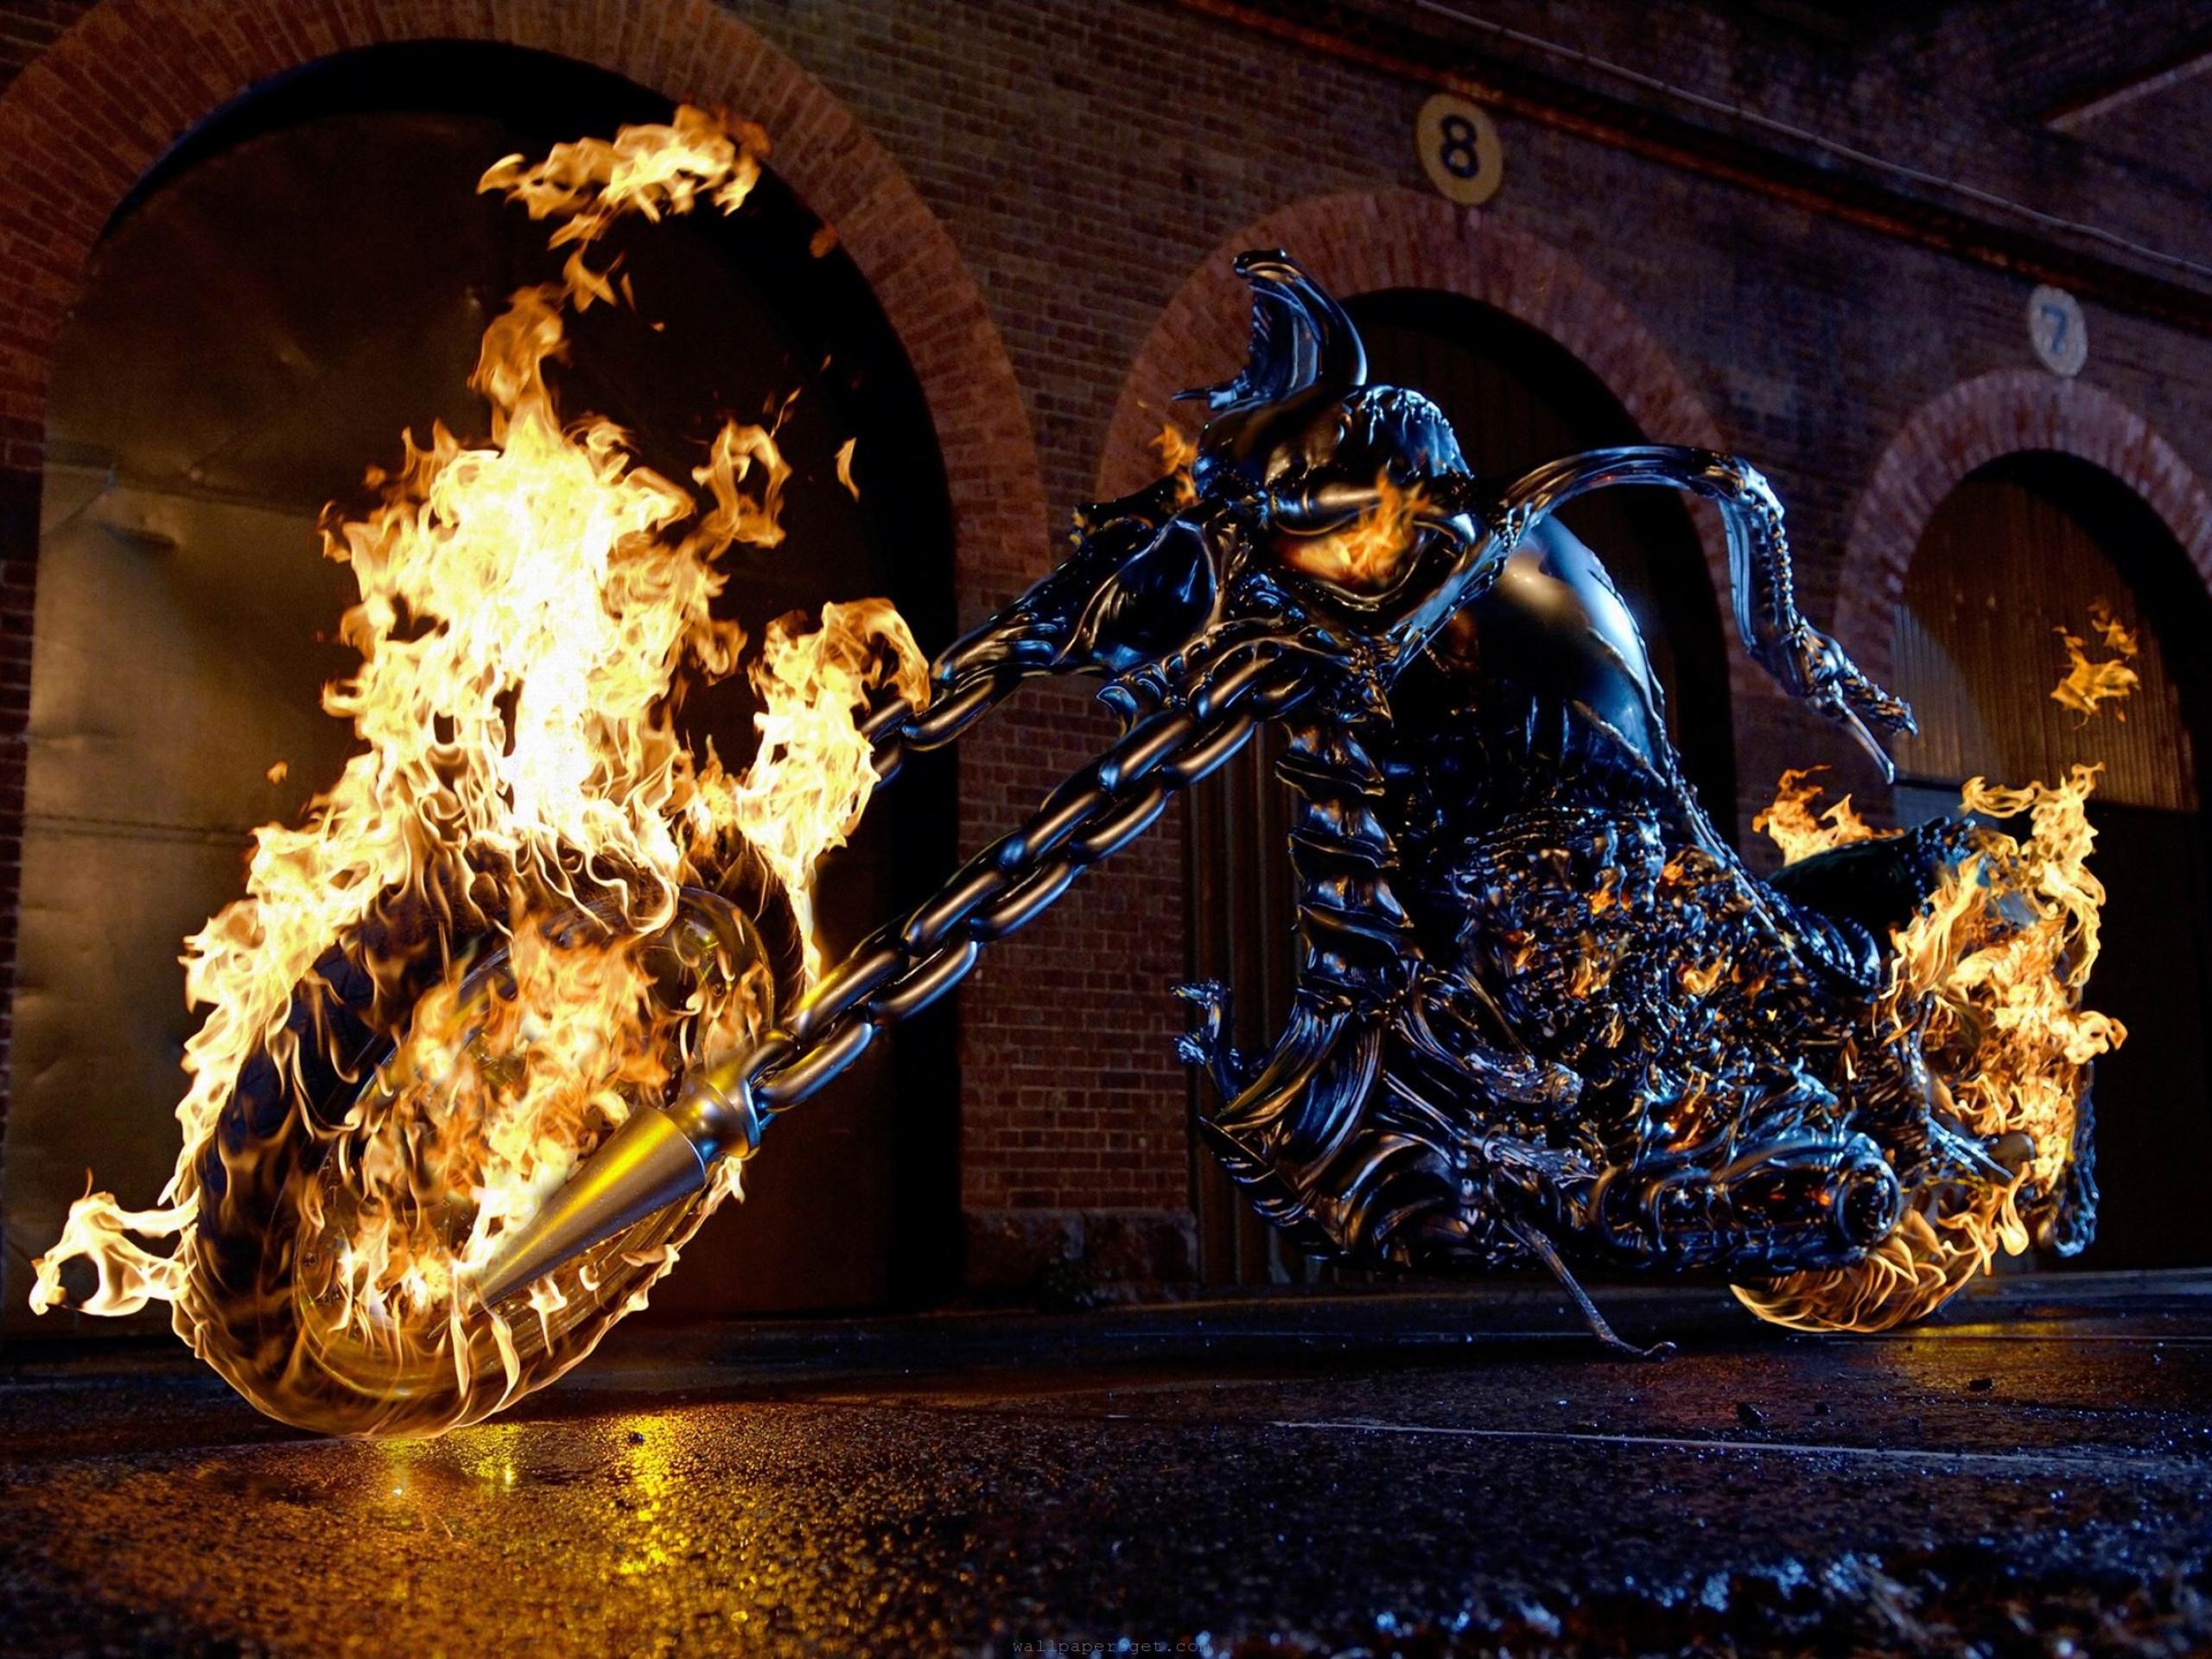 70+] Ghost Rider Bike Wallpapers - WallpaperSafari